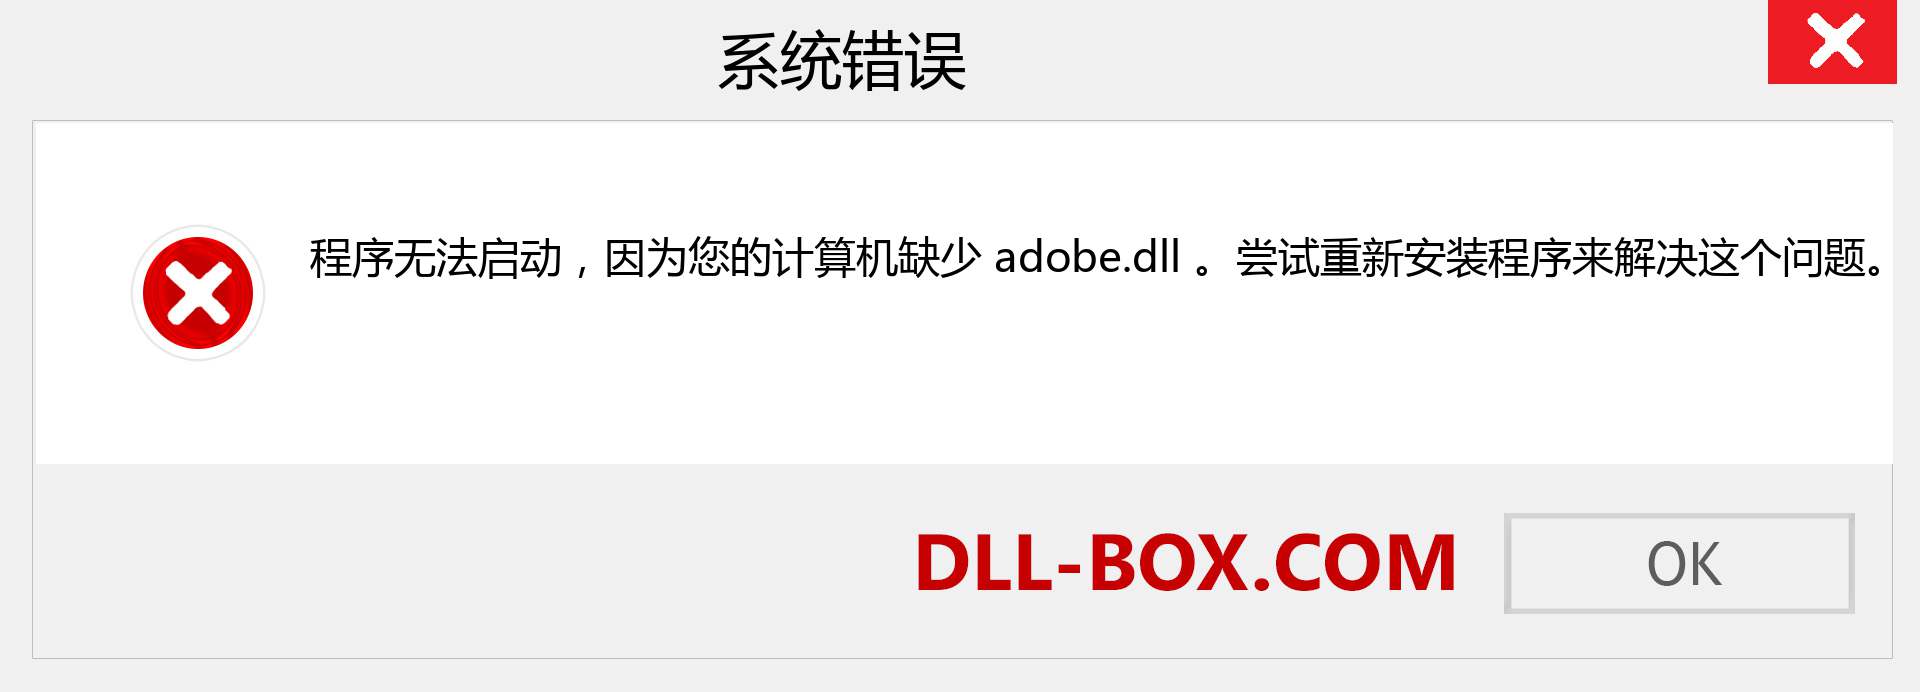 adobe.dll 文件丢失？。 适用于 Windows 7、8、10 的下载 - 修复 Windows、照片、图像上的 adobe dll 丢失错误